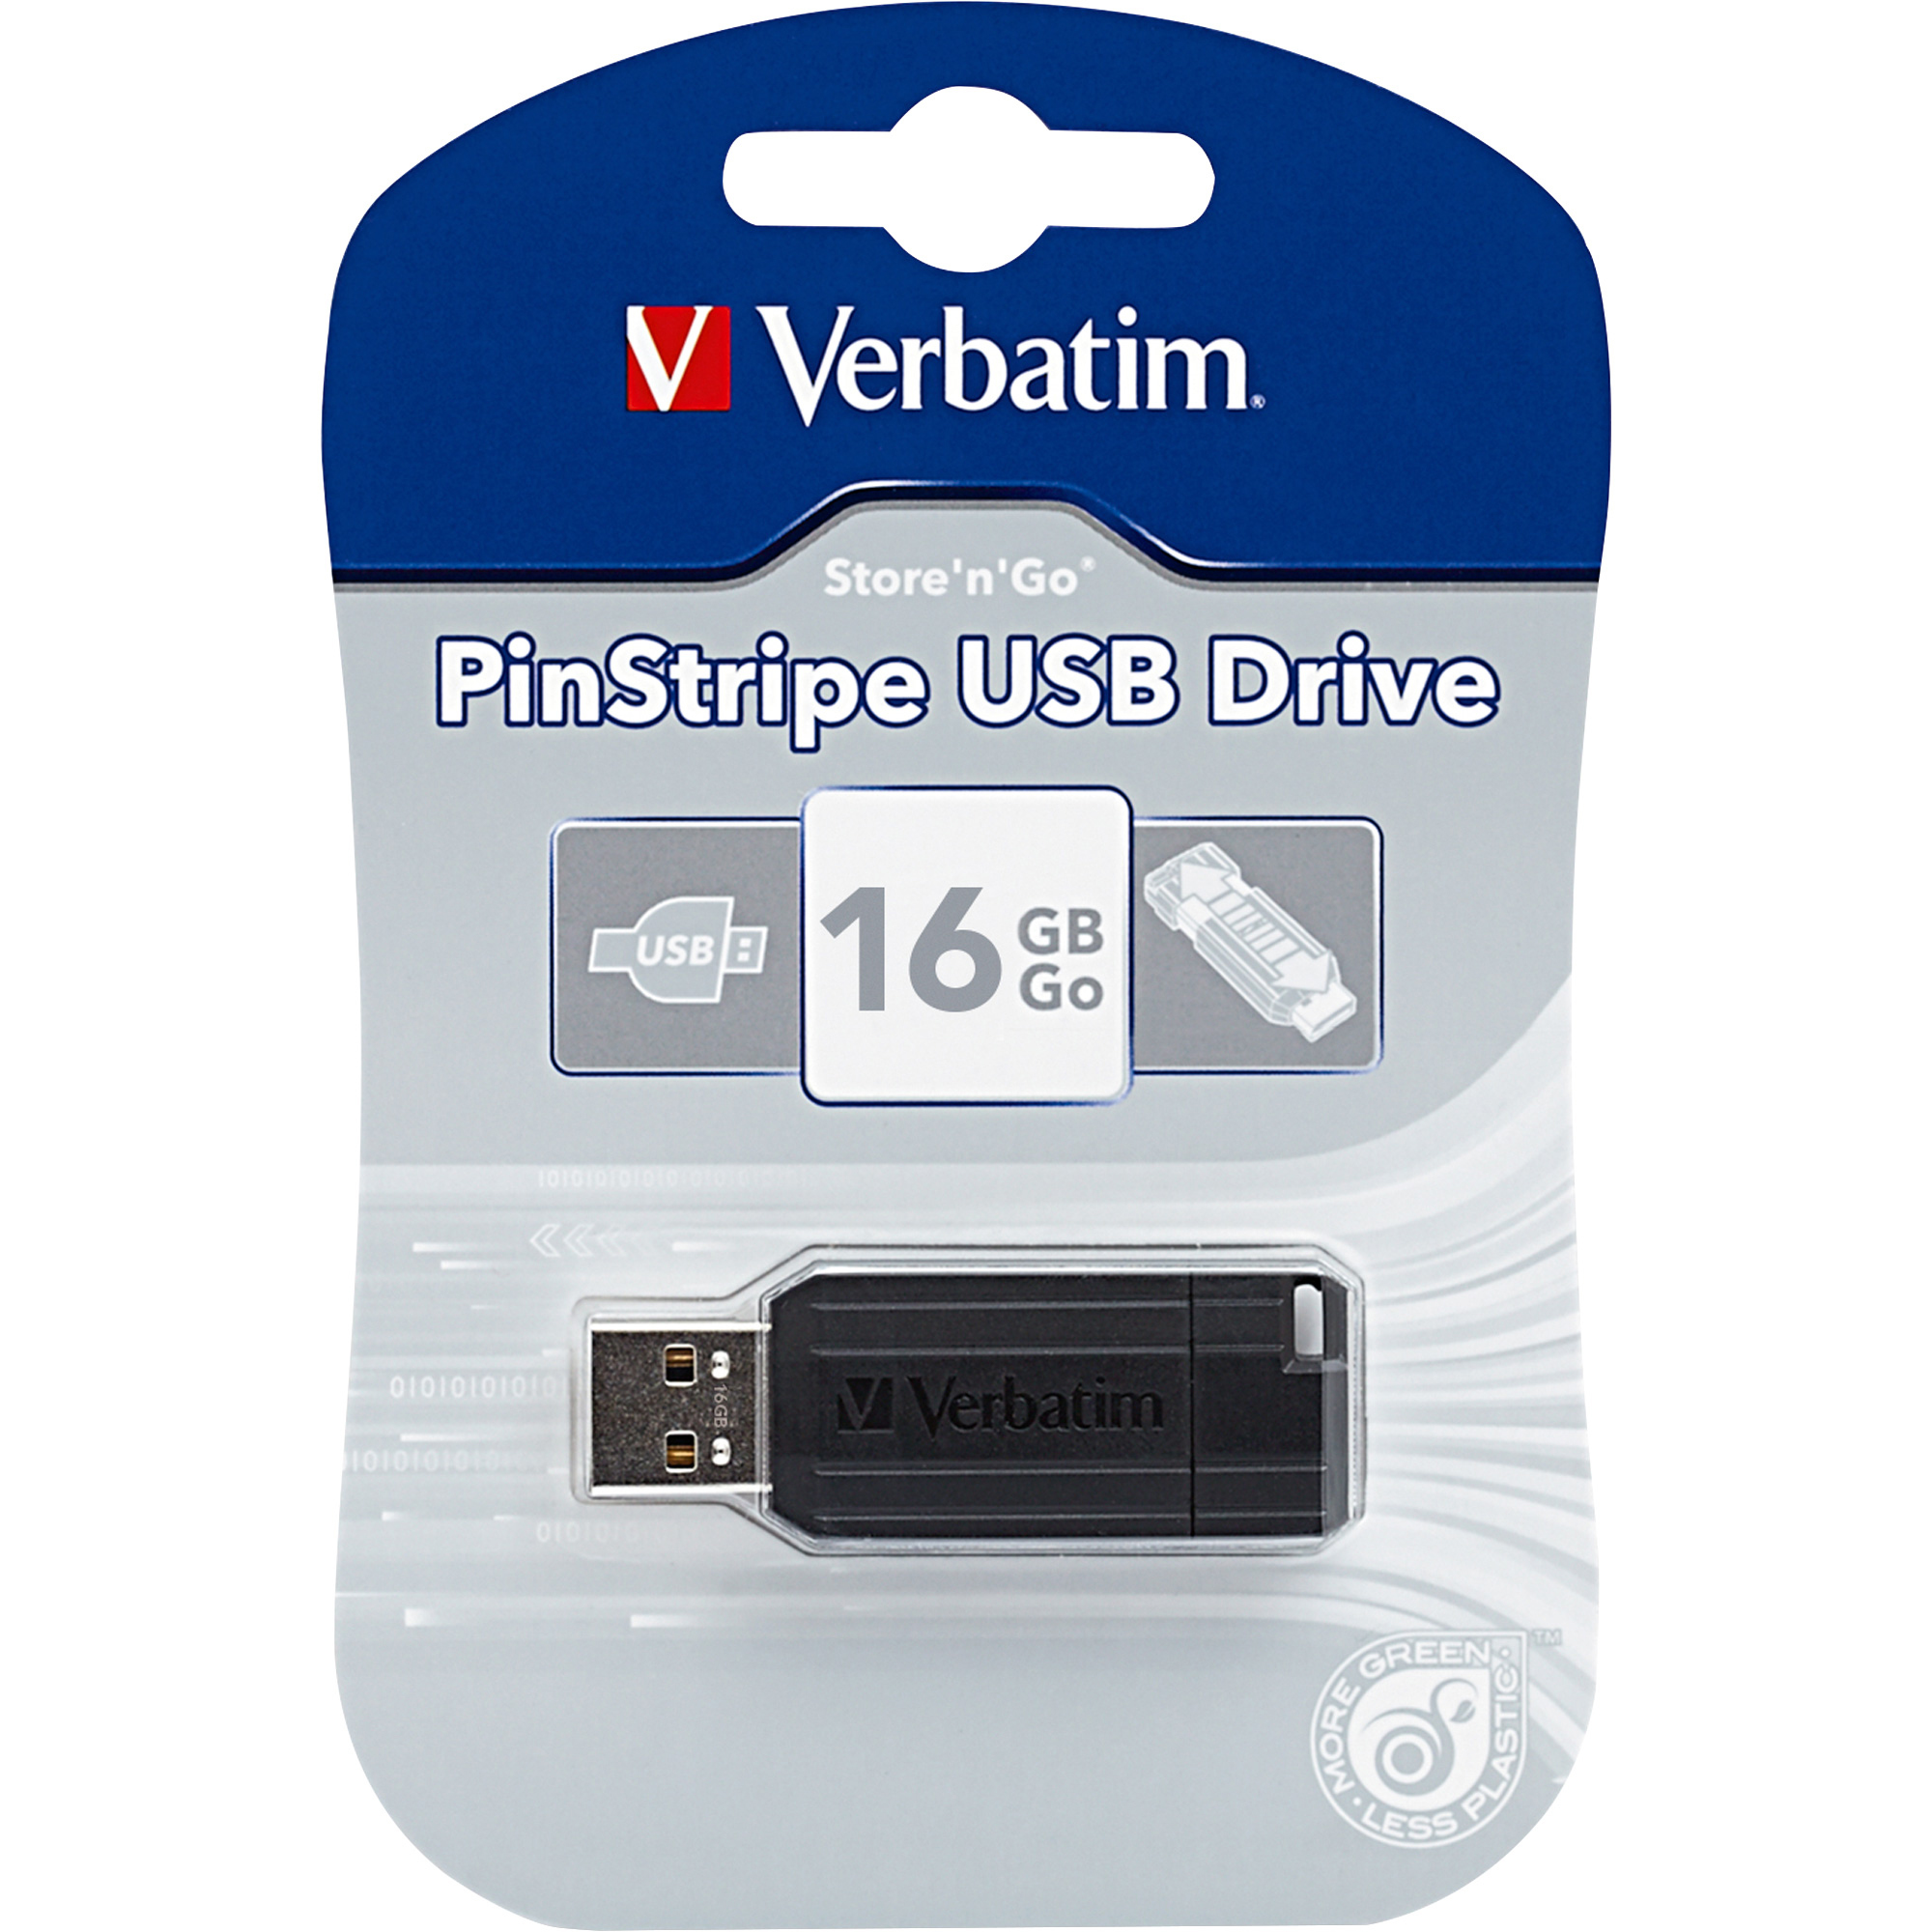 USB VERBATIM STORE'N'GO PINSTRIPE USB DRIVE 16GB 2.0 - Hàng chính hãng (màu đen)